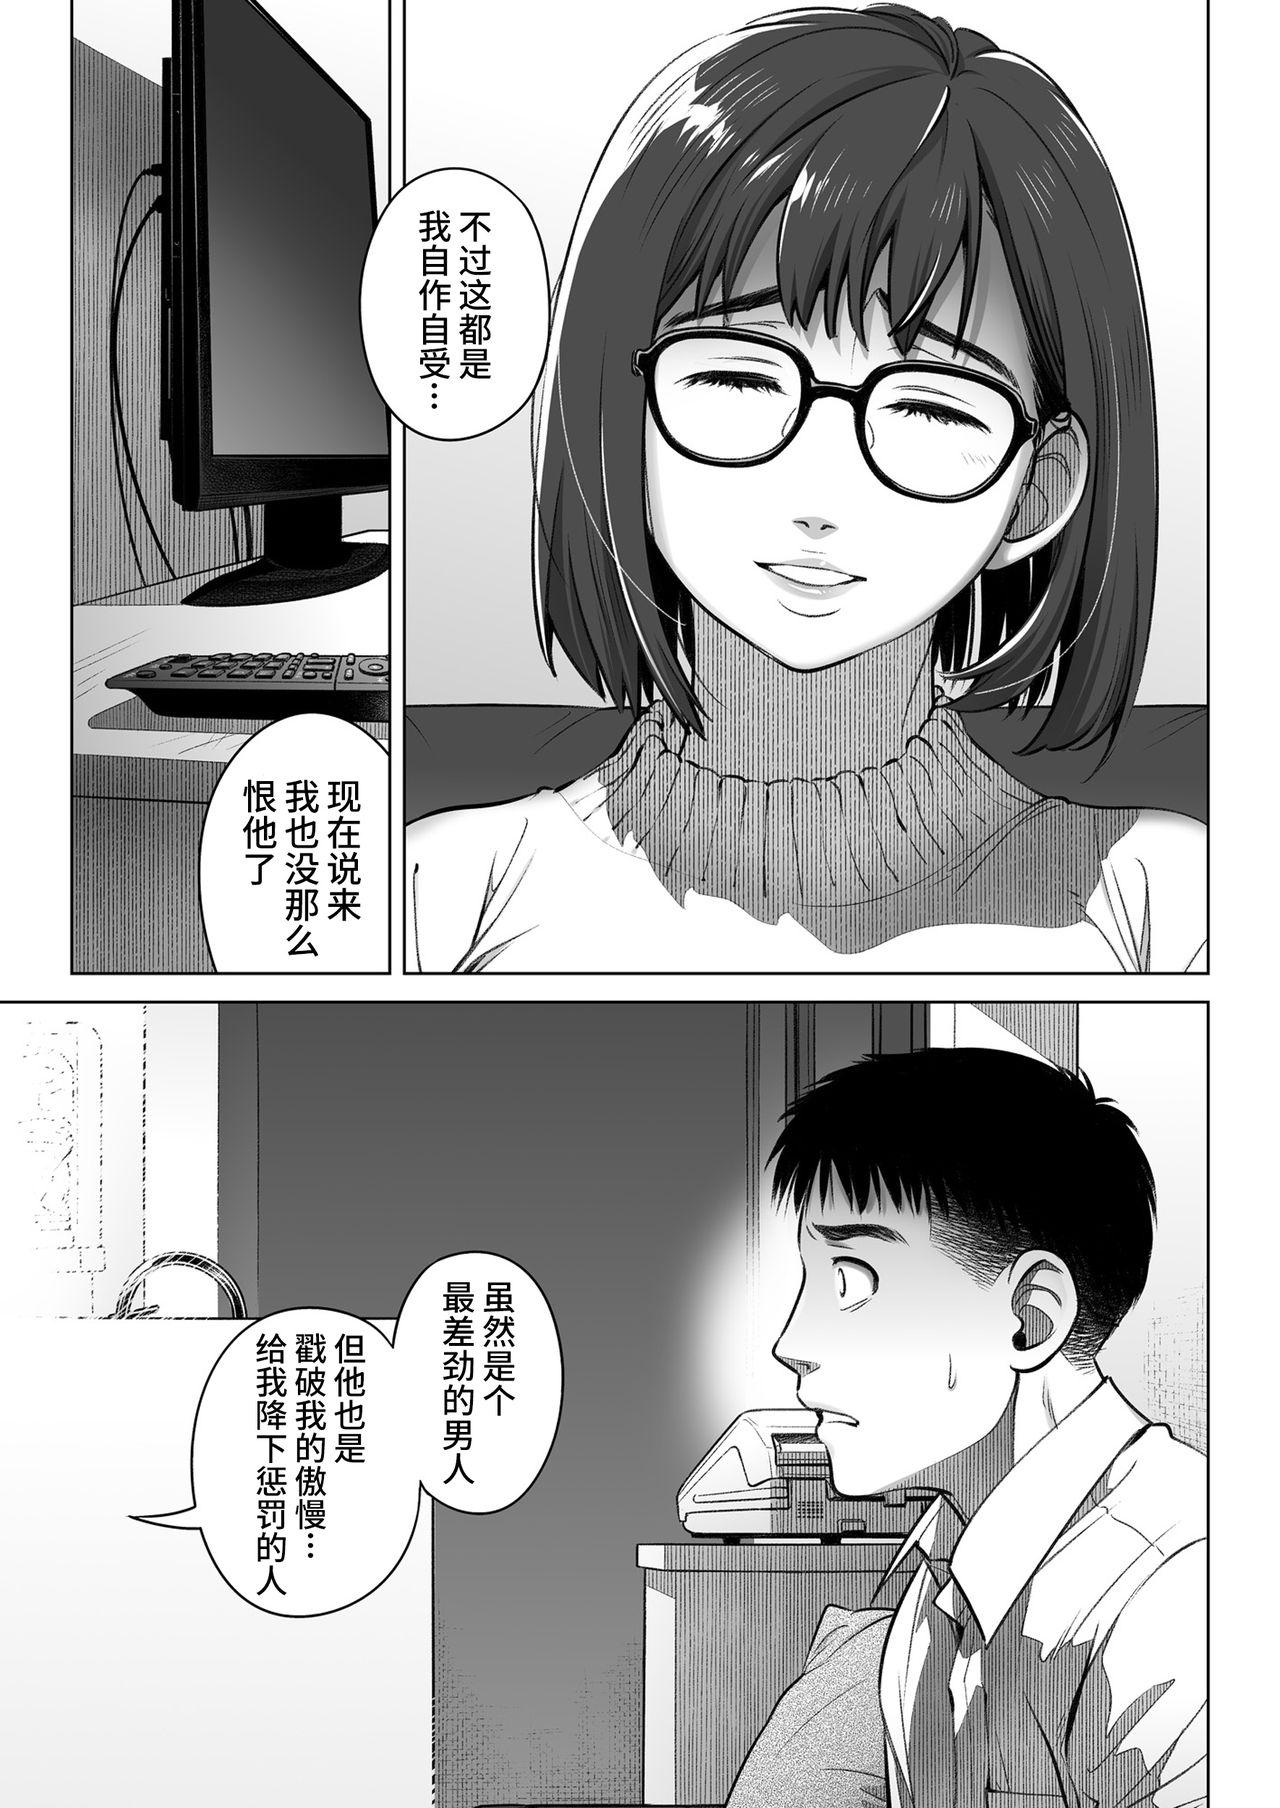 Kurata Akiko no Kokuhaku 2 - Confession of Akiko kurata Epsode 2 | 仓田有稀子的告白 第2话 50